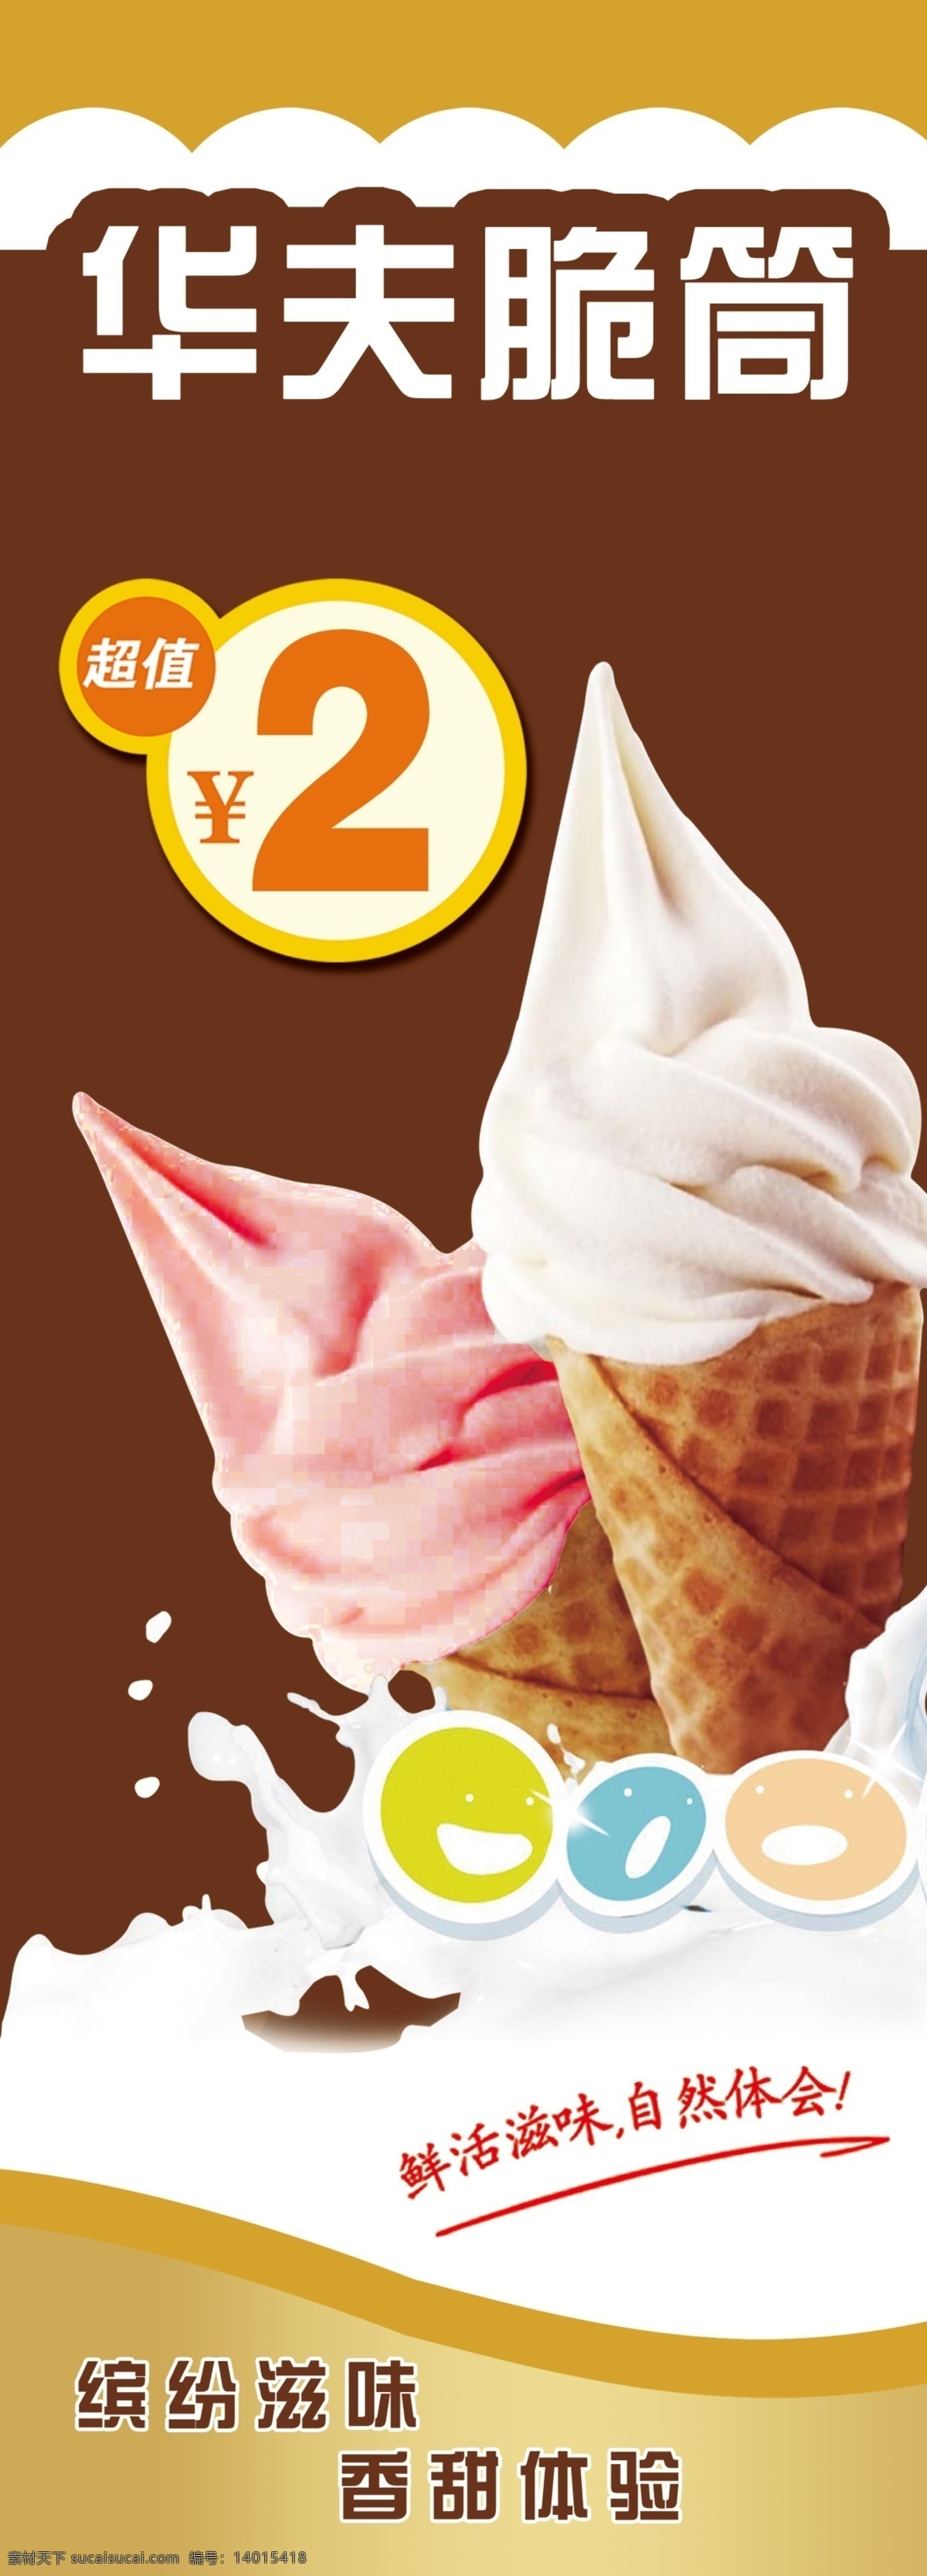 华夫甜筒 展架 脆筒 冰激凌 冰淇淋 草莓冰淇淋 华夫脆筒 展架模板 价签 展架设计 展架背景